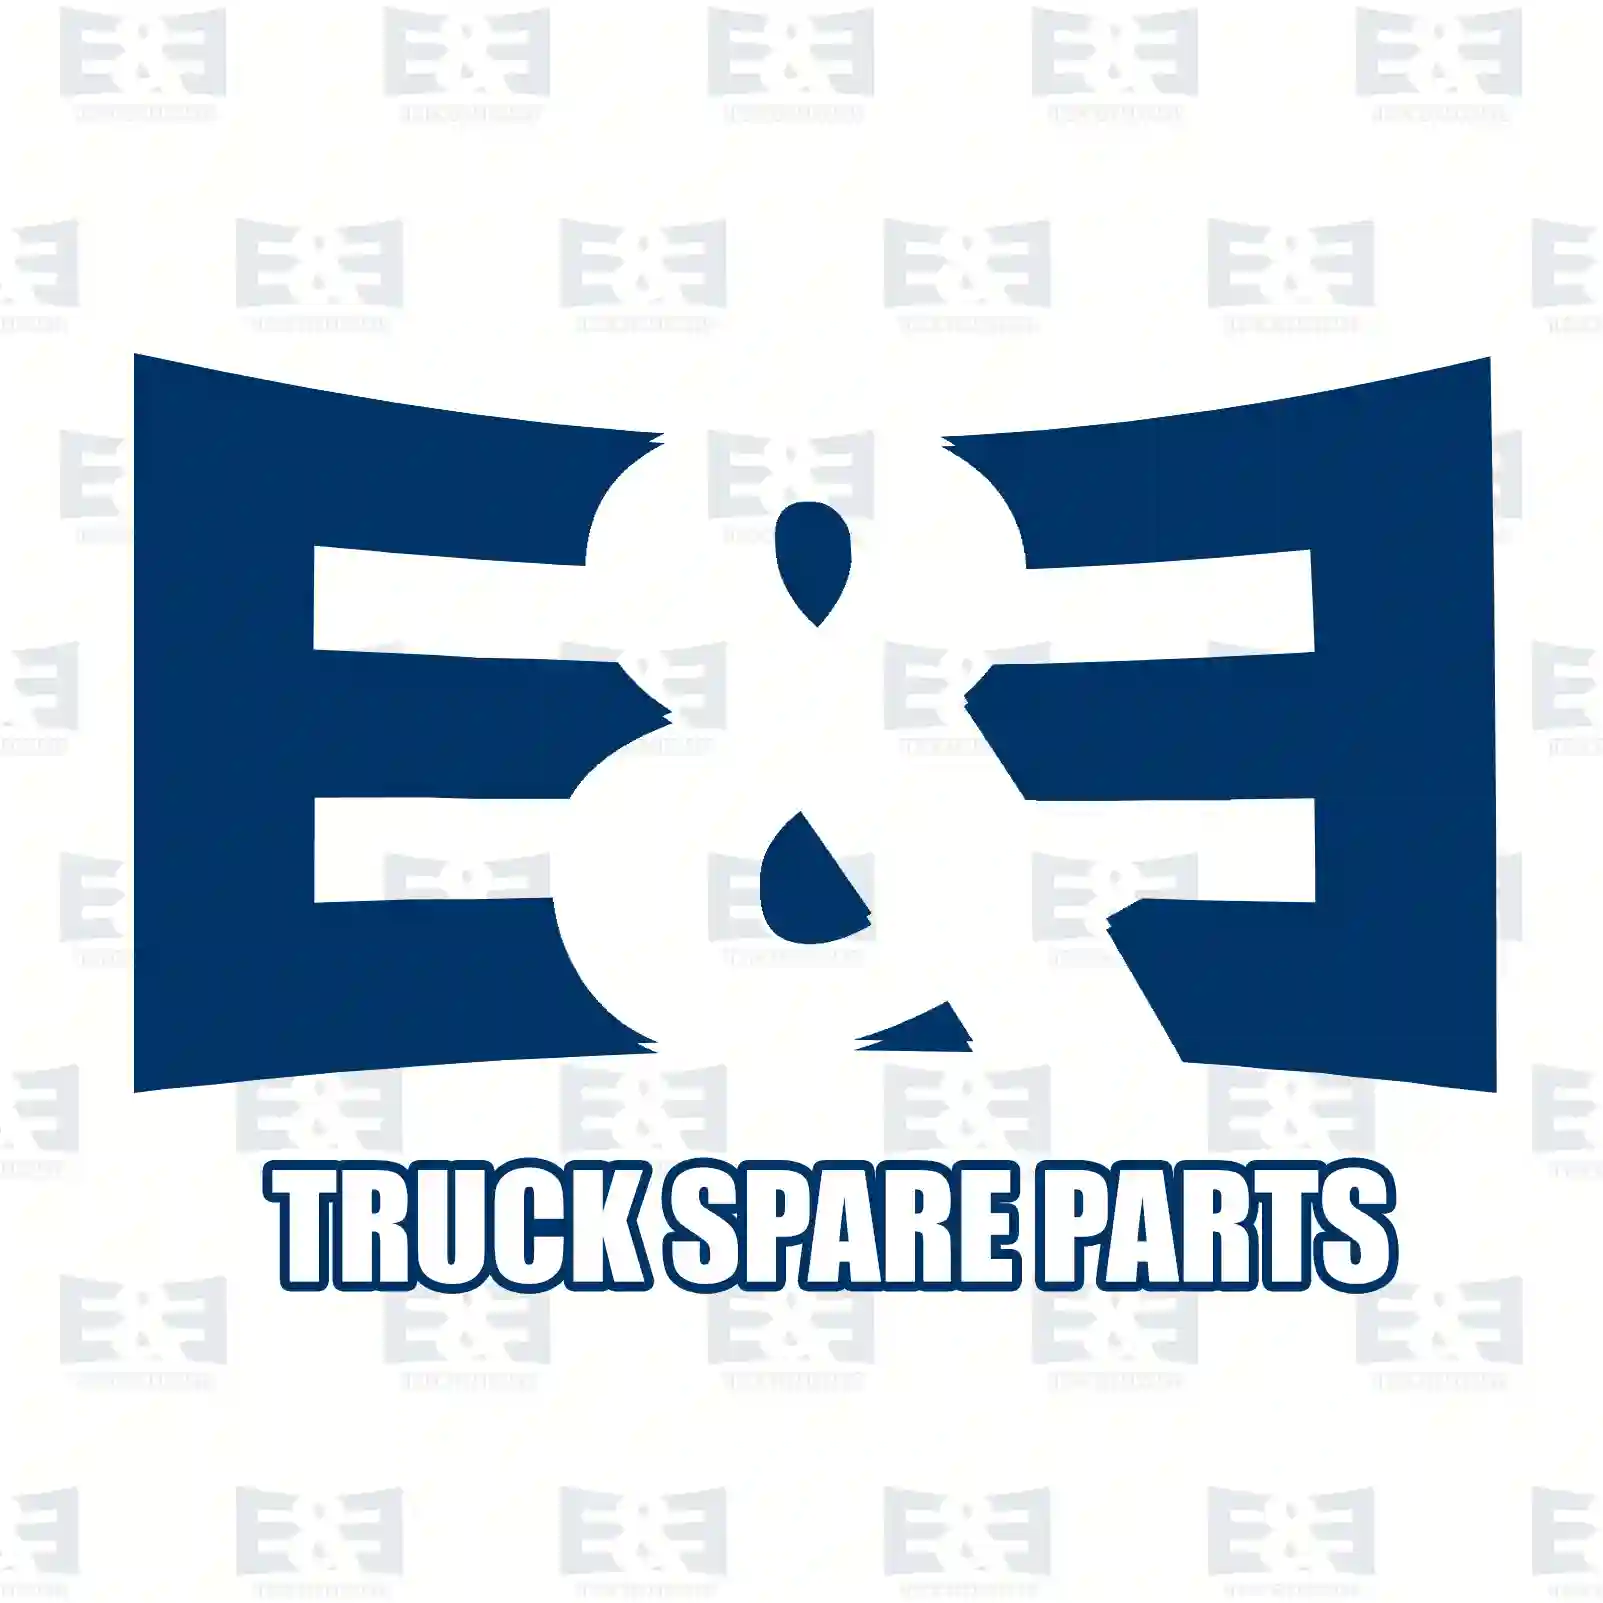 Turbocharger, 2E2200720, 477653, 8112407, 81124075, 849680 ||  2E2200720 E&E Truck Spare Parts | Truck Spare Parts, Auotomotive Spare Parts Turbocharger, 2E2200720, 477653, 8112407, 81124075, 849680 ||  2E2200720 E&E Truck Spare Parts | Truck Spare Parts, Auotomotive Spare Parts